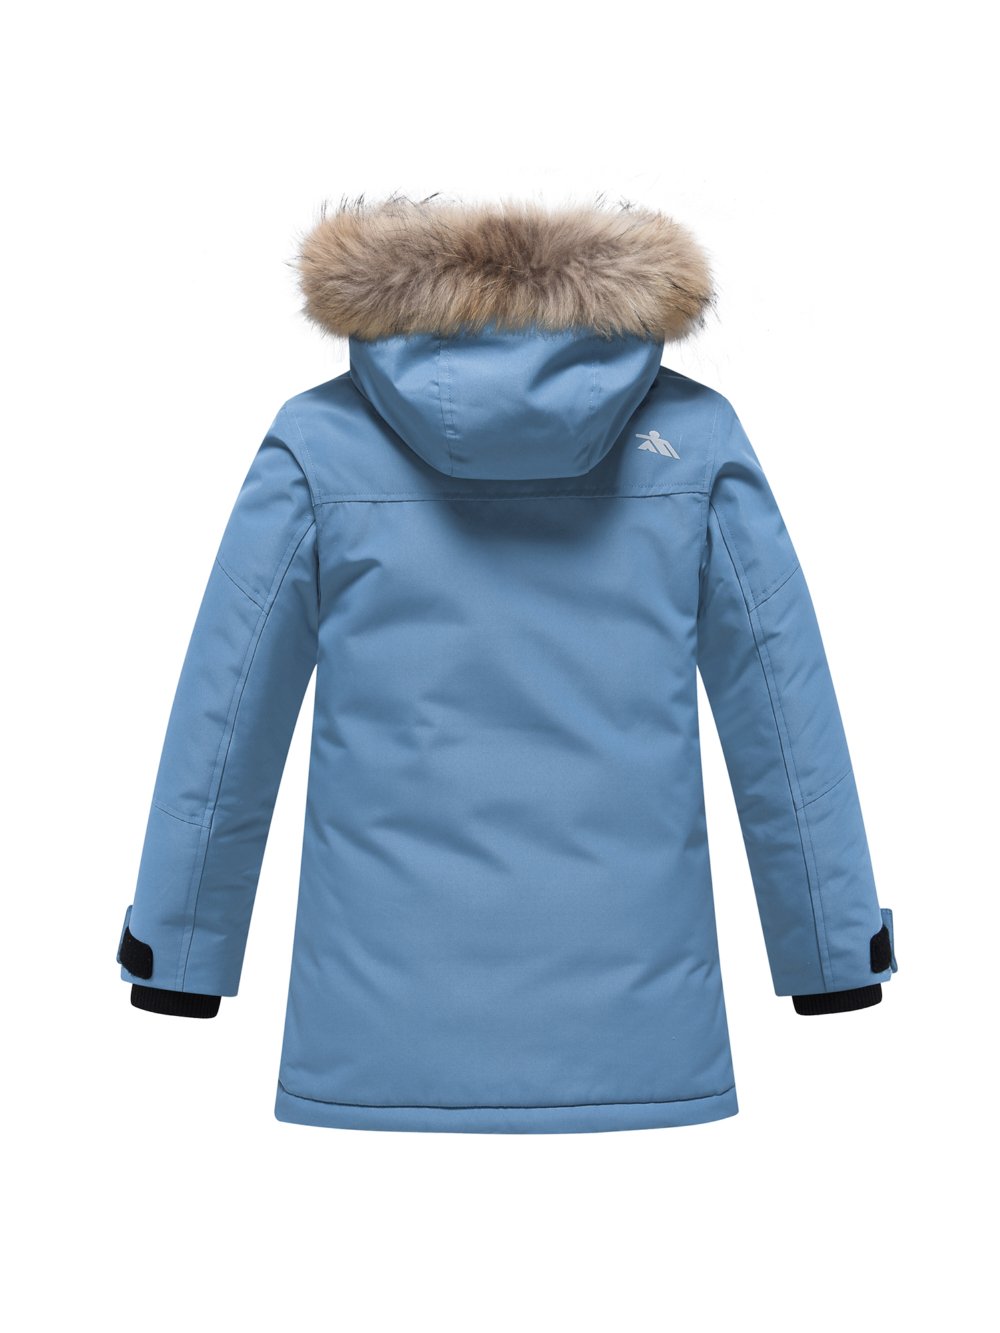 Купить куртку парку для мальчика оптом от производителя недорого в Москве 9339S 1